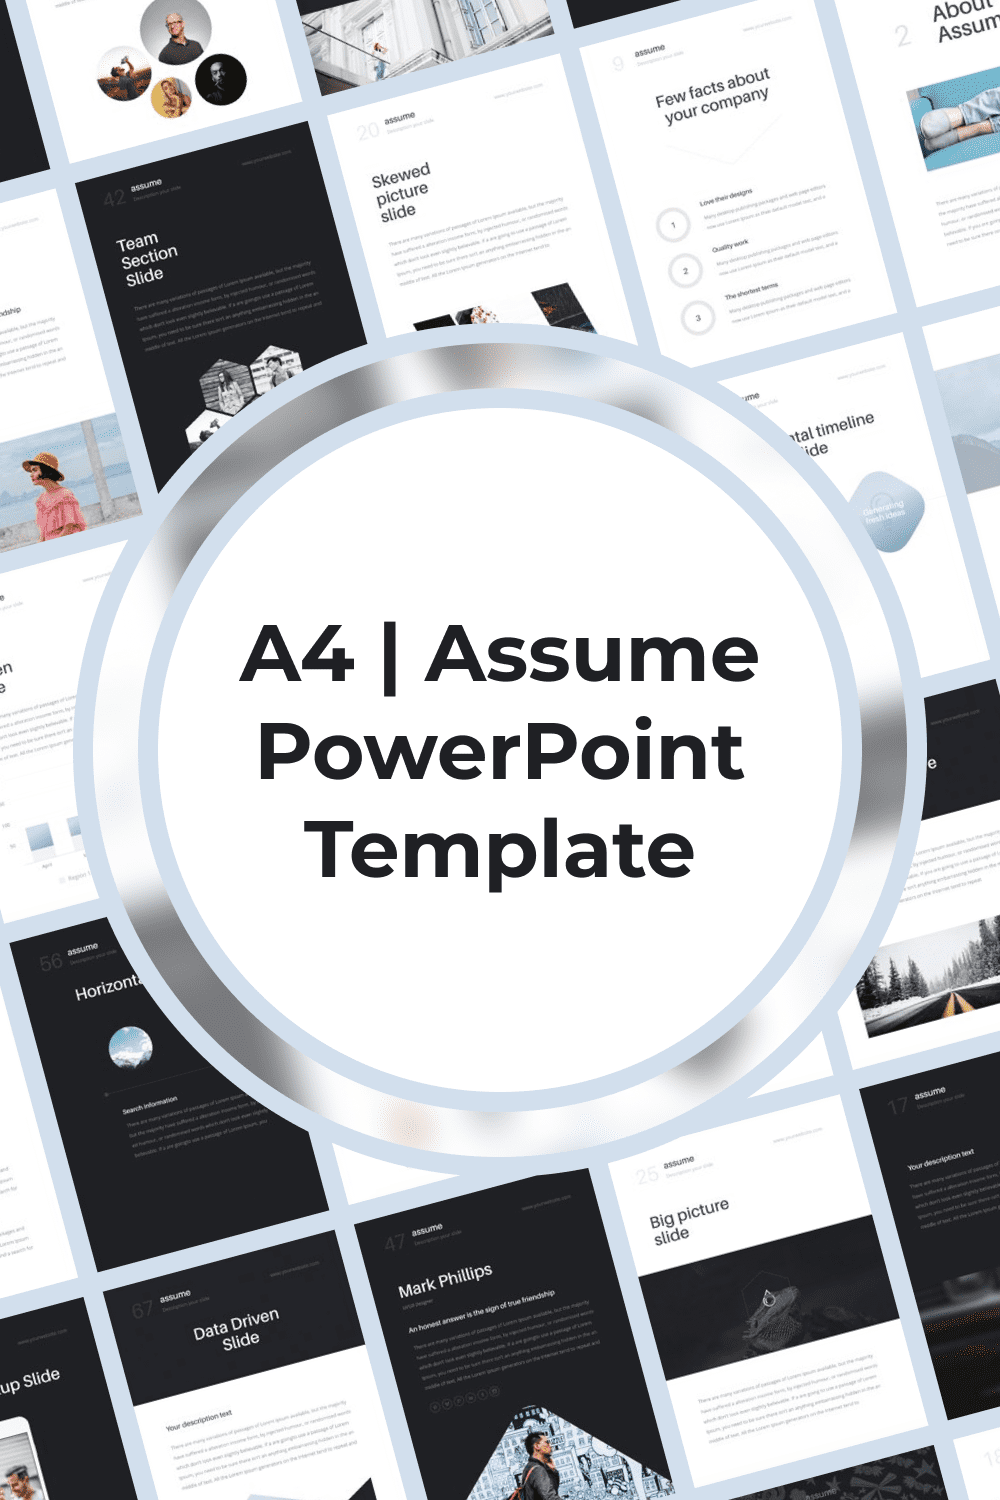 A4 | Assume PowerPoint Template - Pinterest.